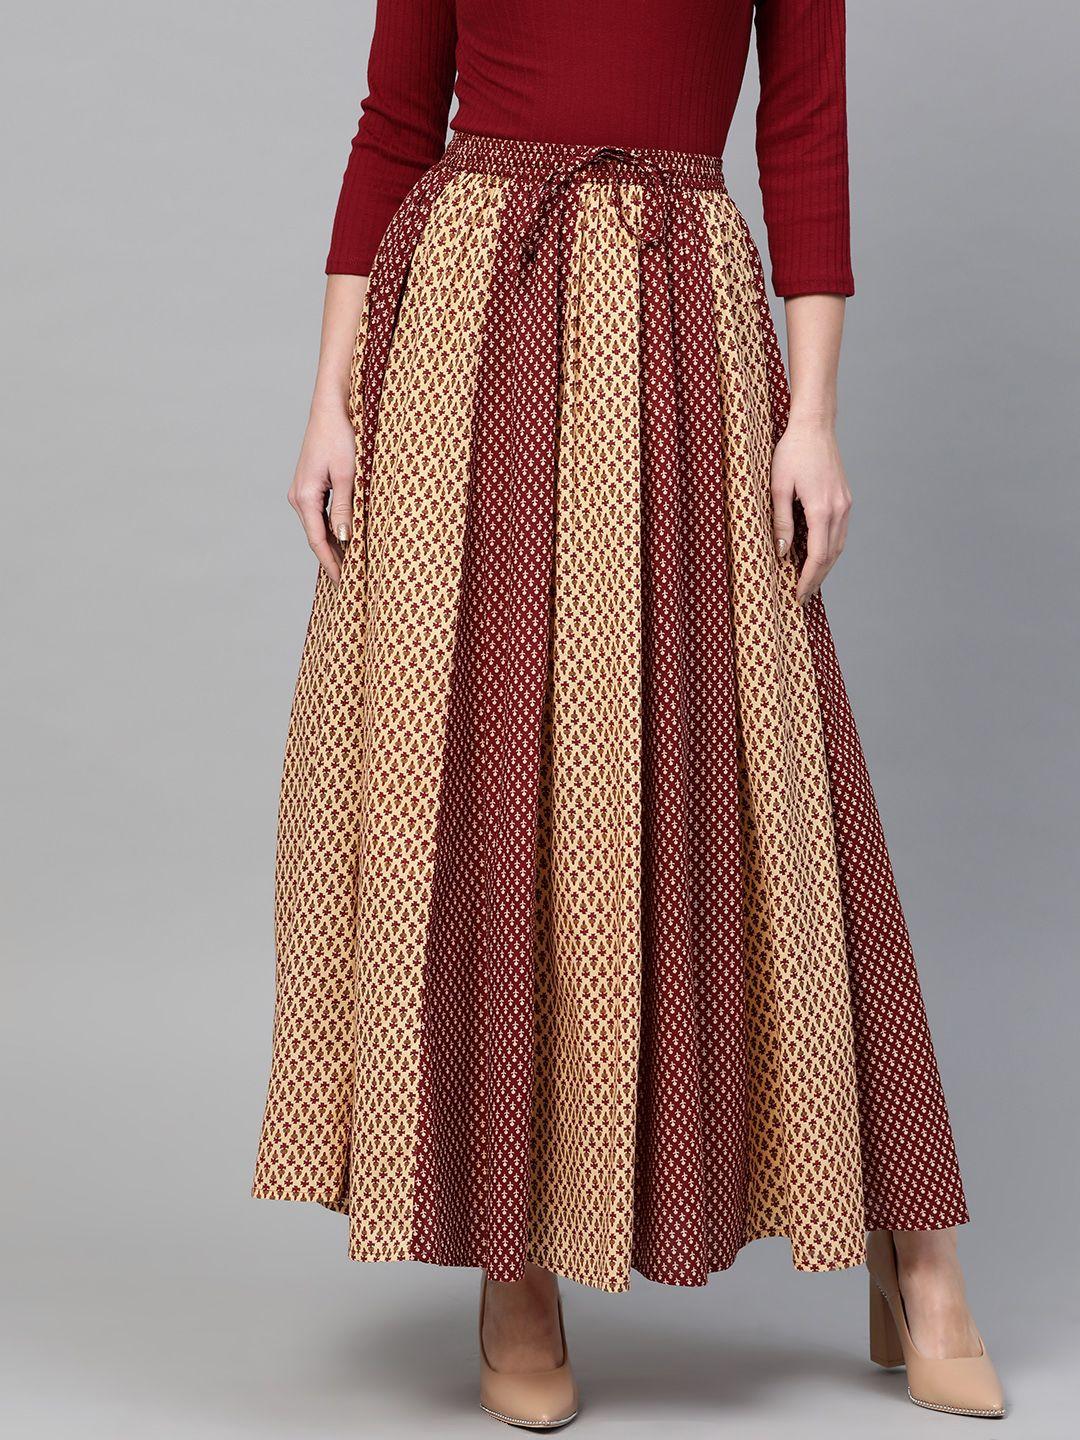 anayna Women Maroon & Beige Printed Flared Maxi Skirt